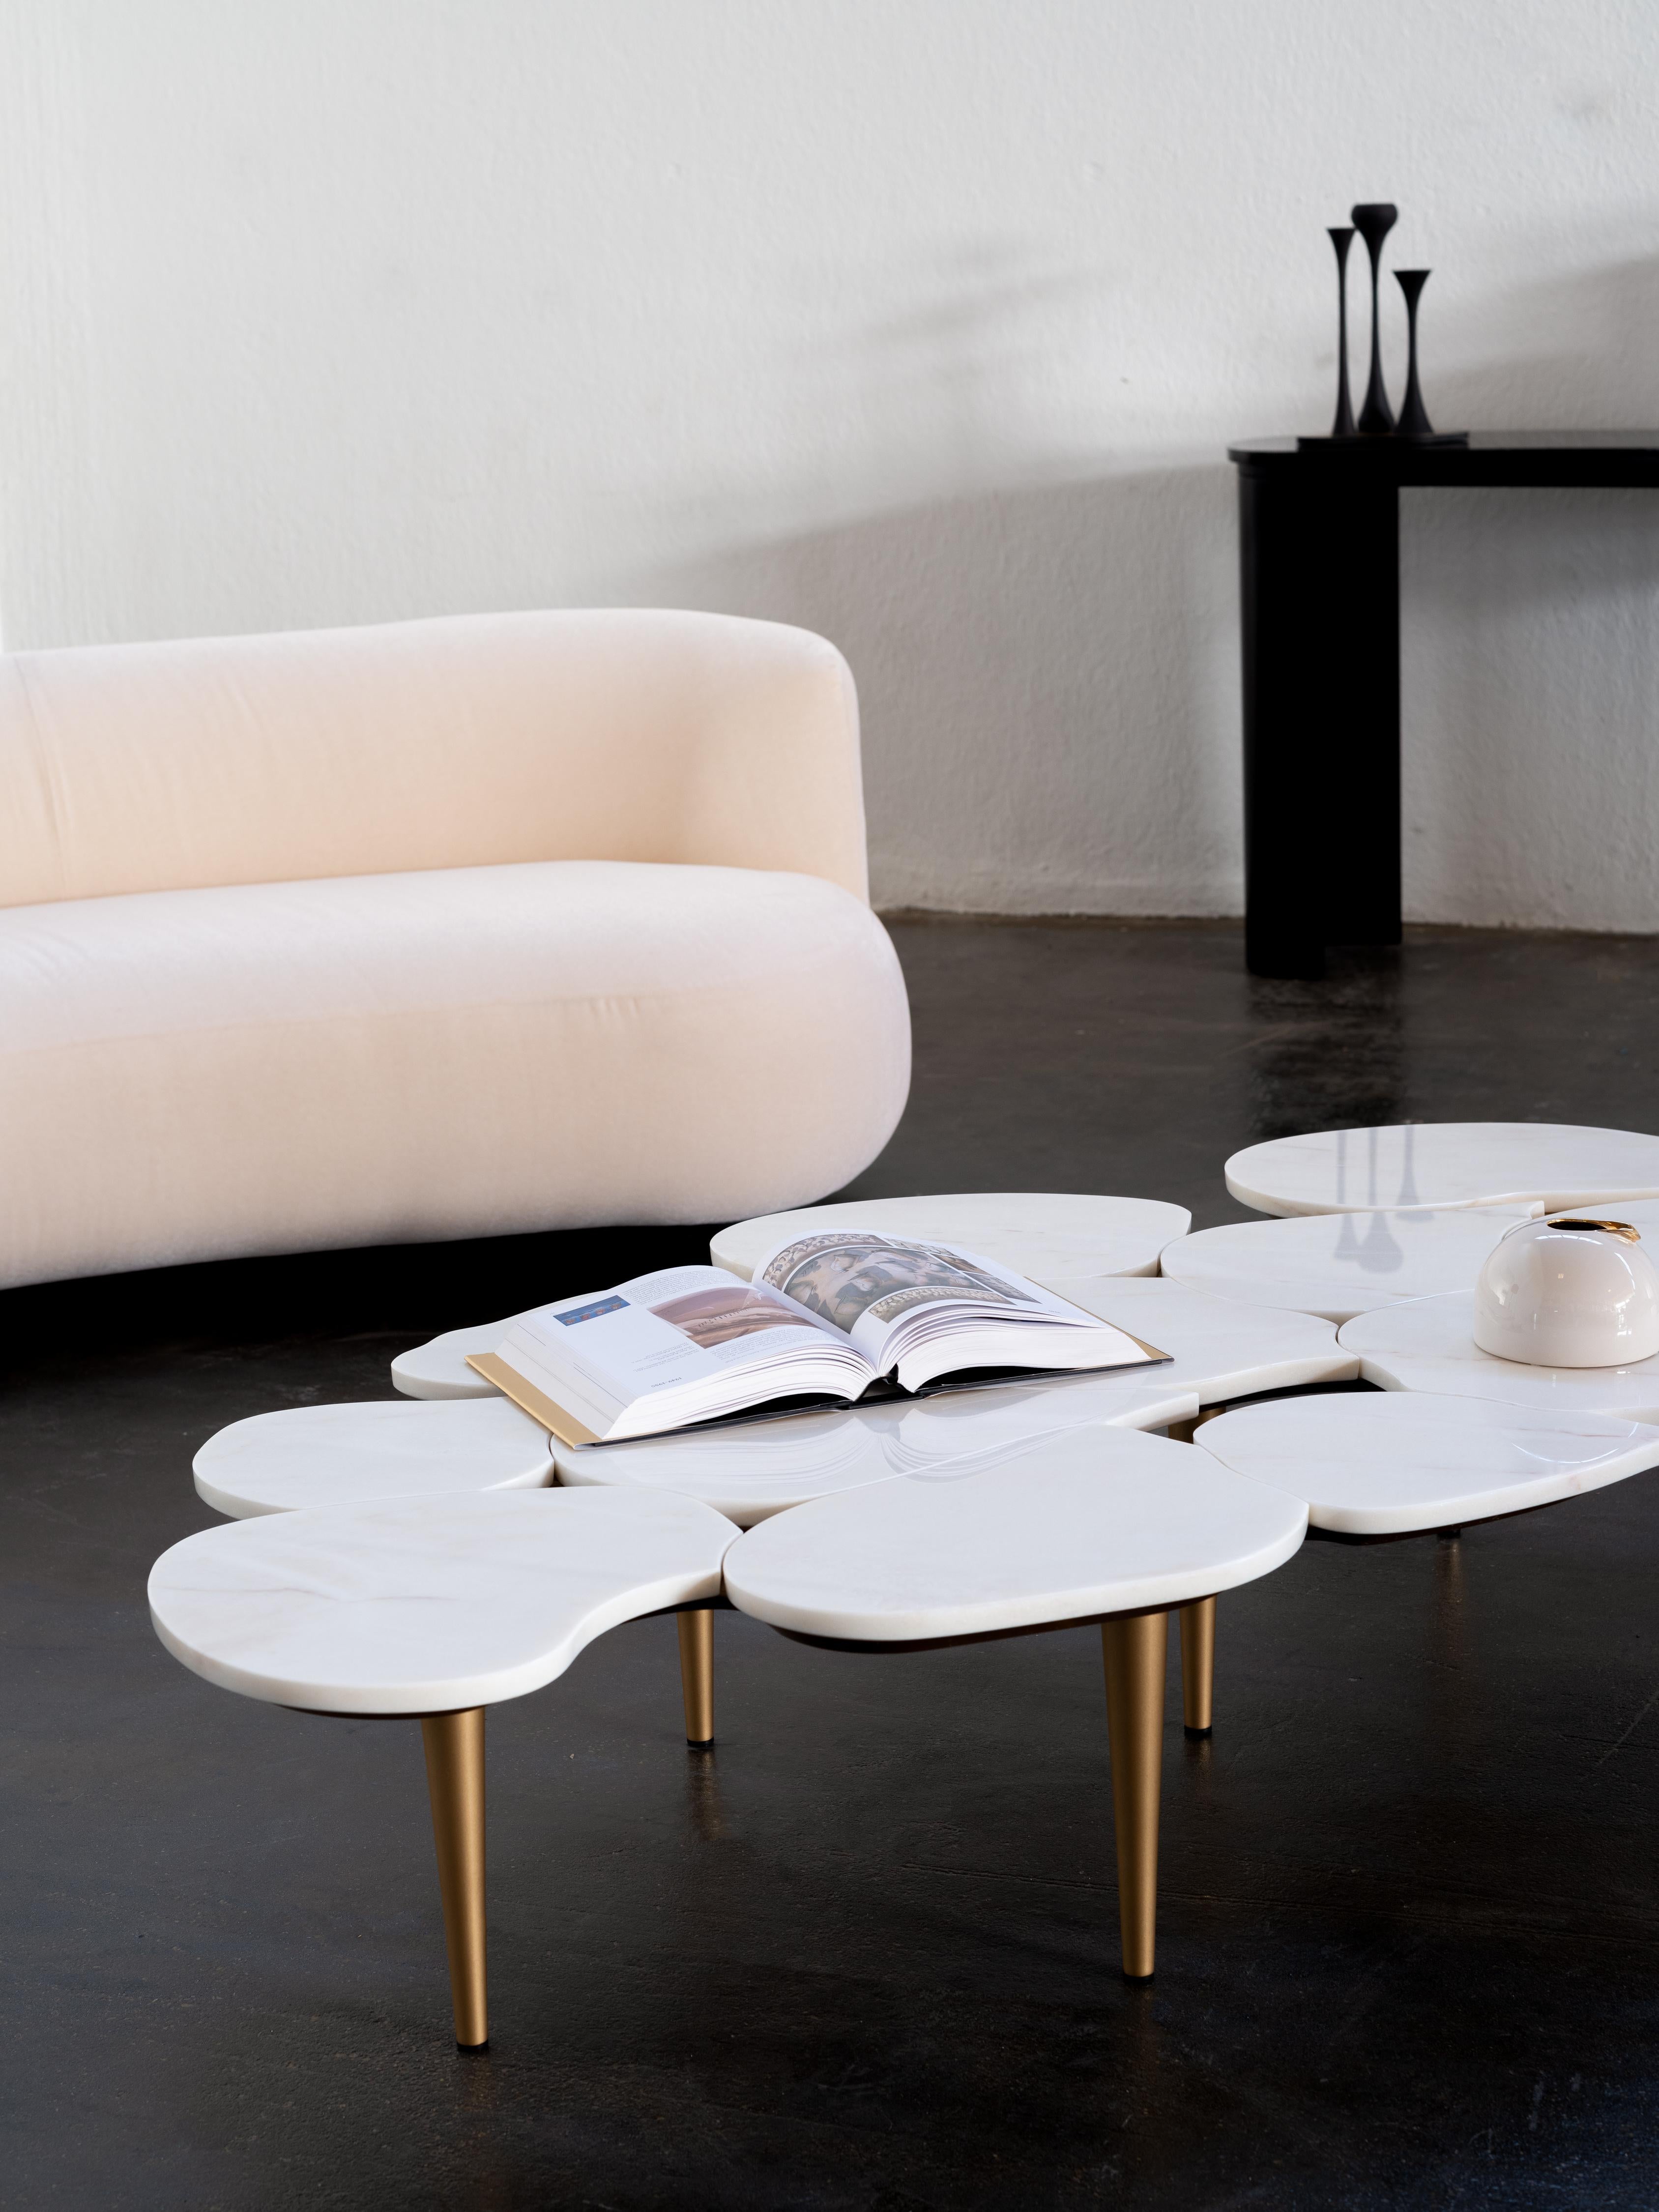 Table basse Infinity, Collection S, fabriquée à la main au Portugal - Europe par GF Modern.

La table basse en marbre Infinity capture le passage du temps dans un regard infini. Doté d'un plateau en forme de pétale en marbre Calacatta, Infinity